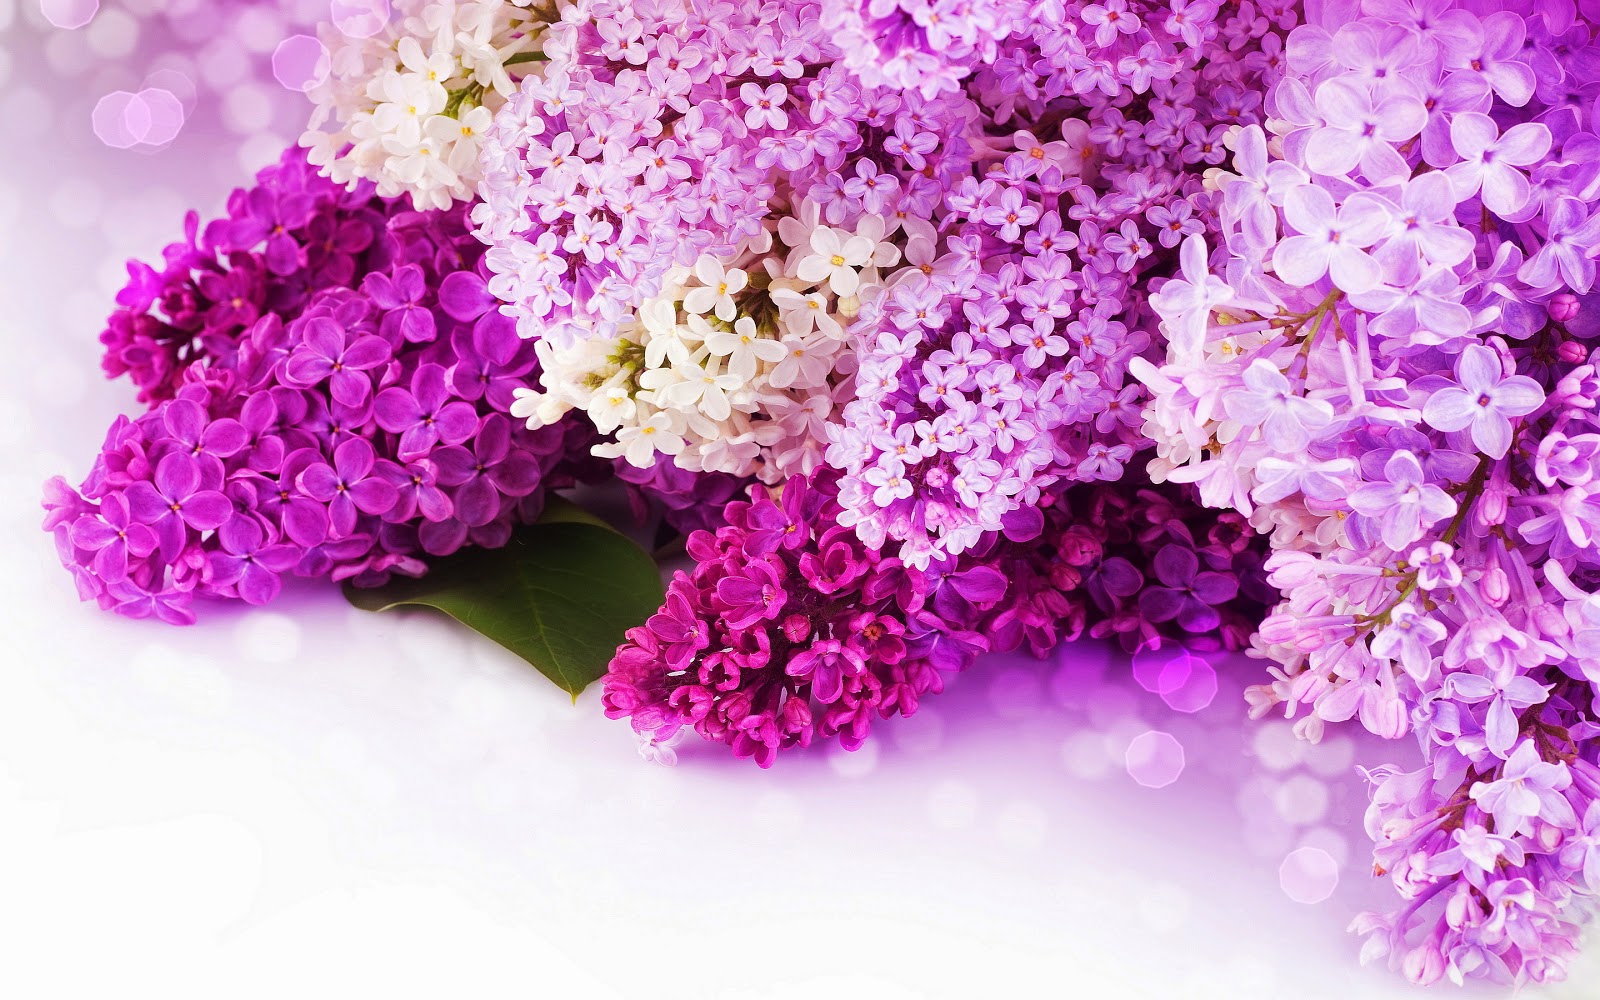 http://www.mrwallpaper.com/wallpapers/lilac-purple-flowers.jpg